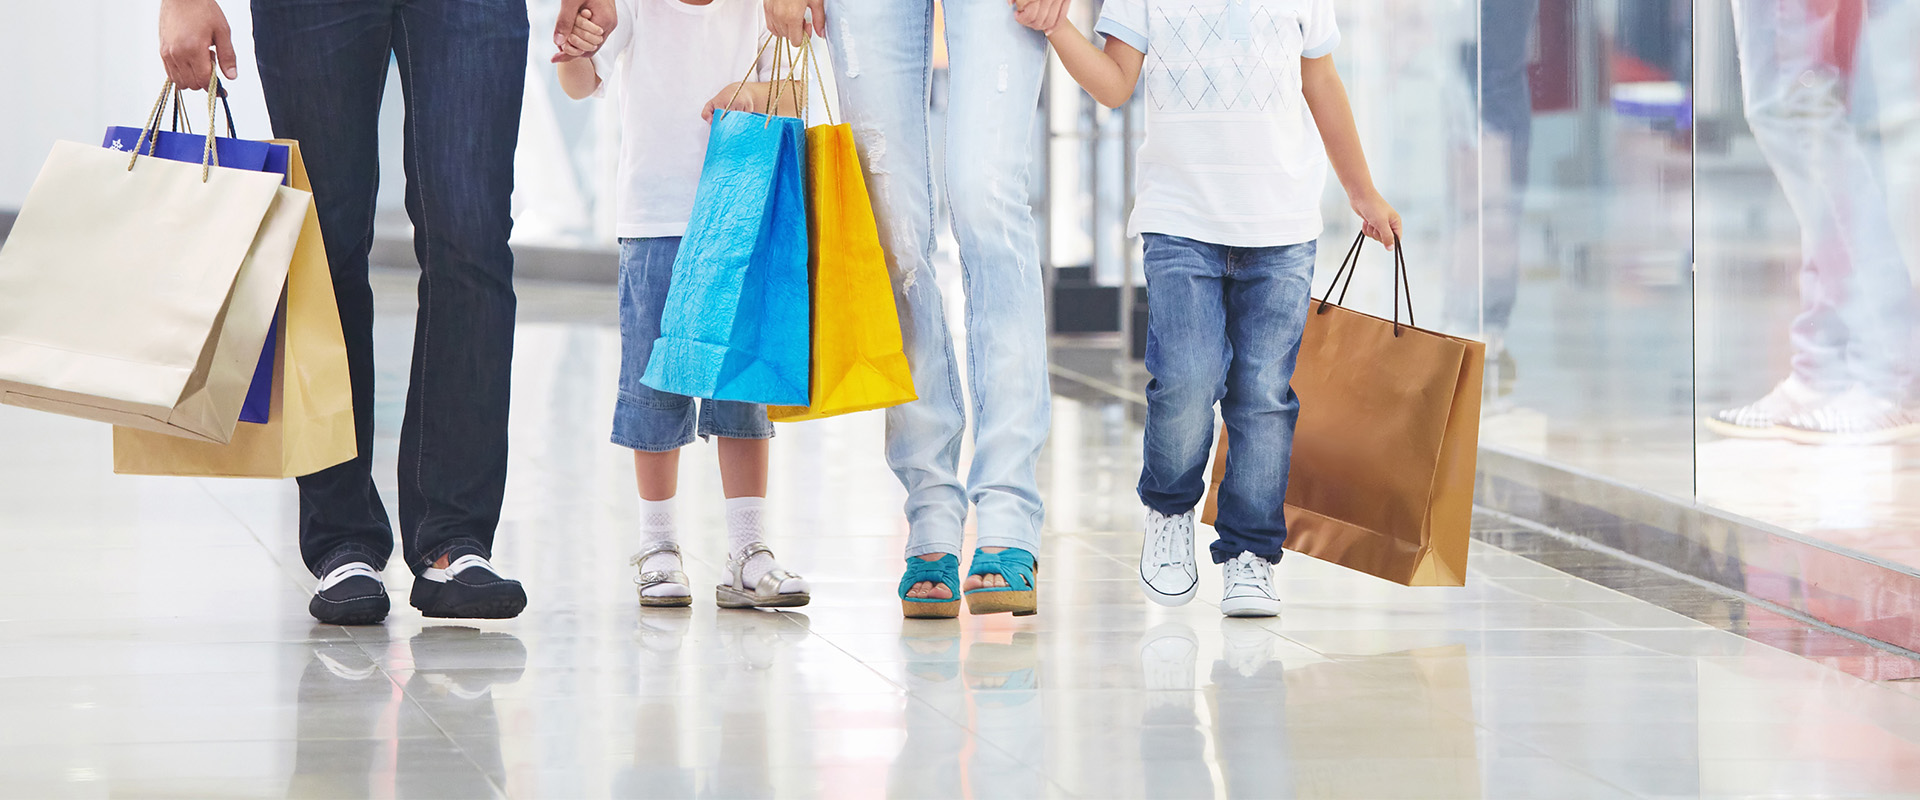 Families verwachten leuke klantbeleving bij het shoppen